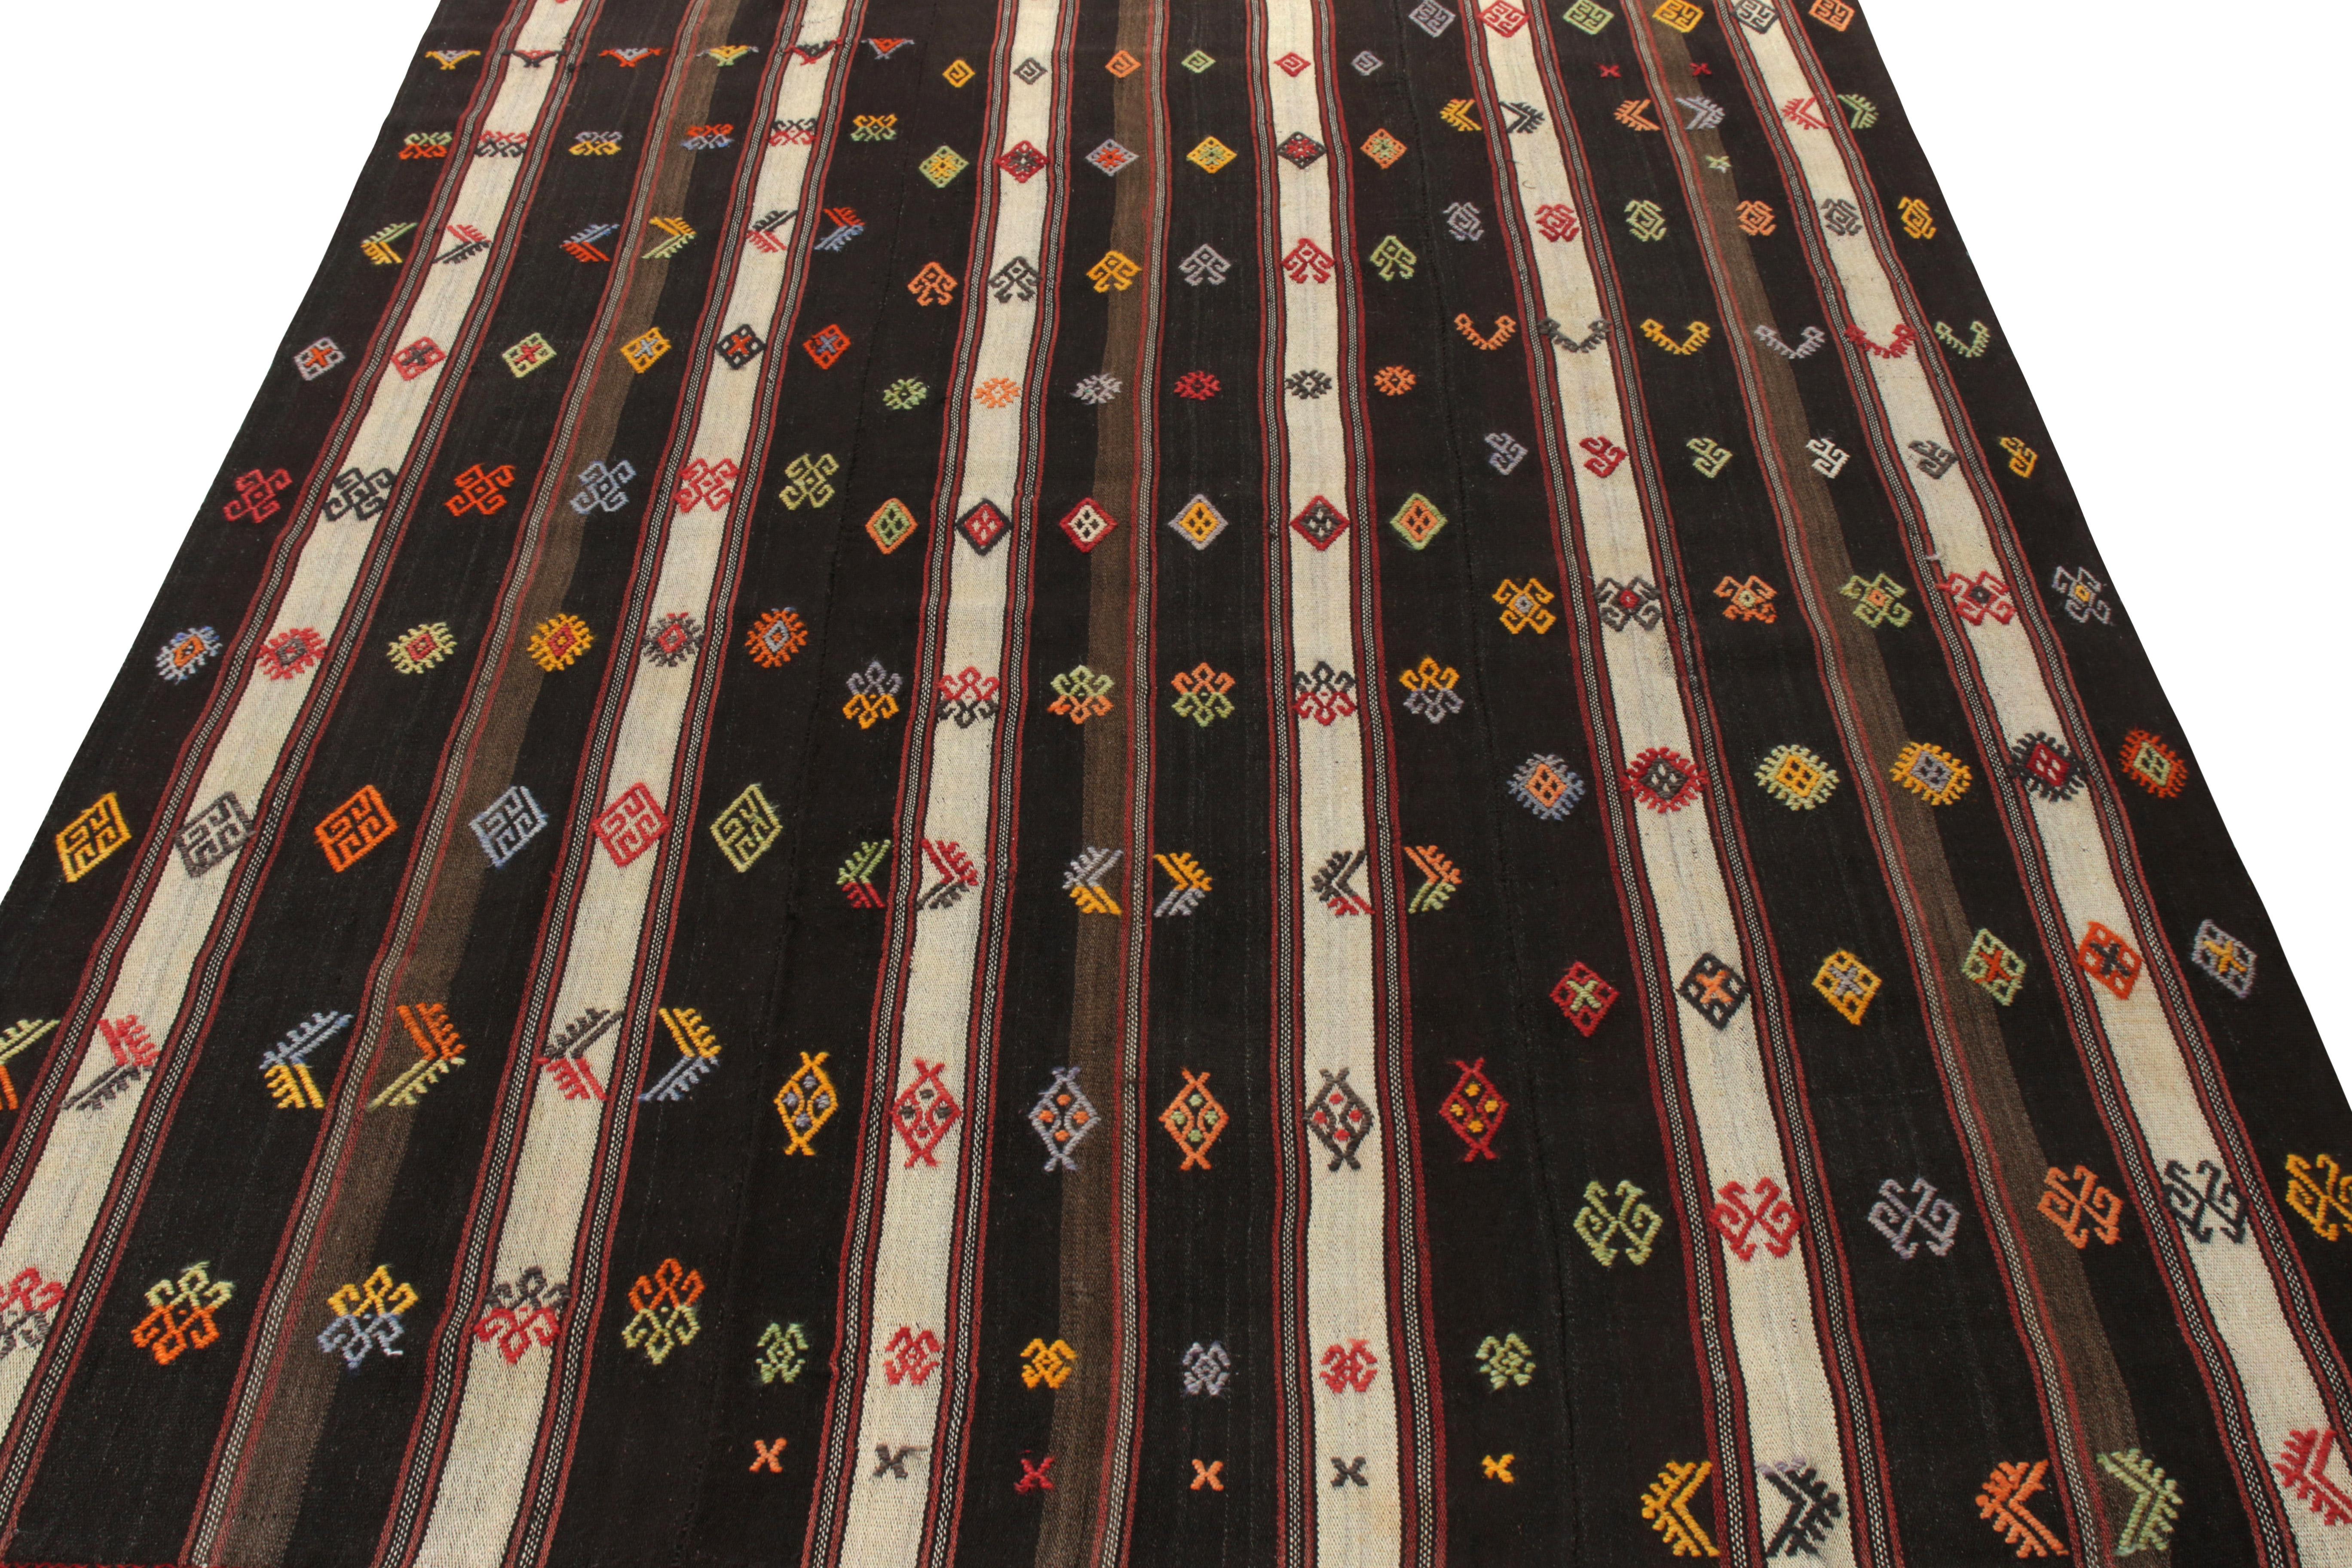 Un tapis Kilim vintage 6x8 tissé en Turquie vers 1970-1980 entrant dans la collection Kilim & Flatweave de Rug & Kilim. Ce style distinctif est tissé dans deux panneaux de laine ensemble avec une sensibilité texturale haute et basse appréciable. Le